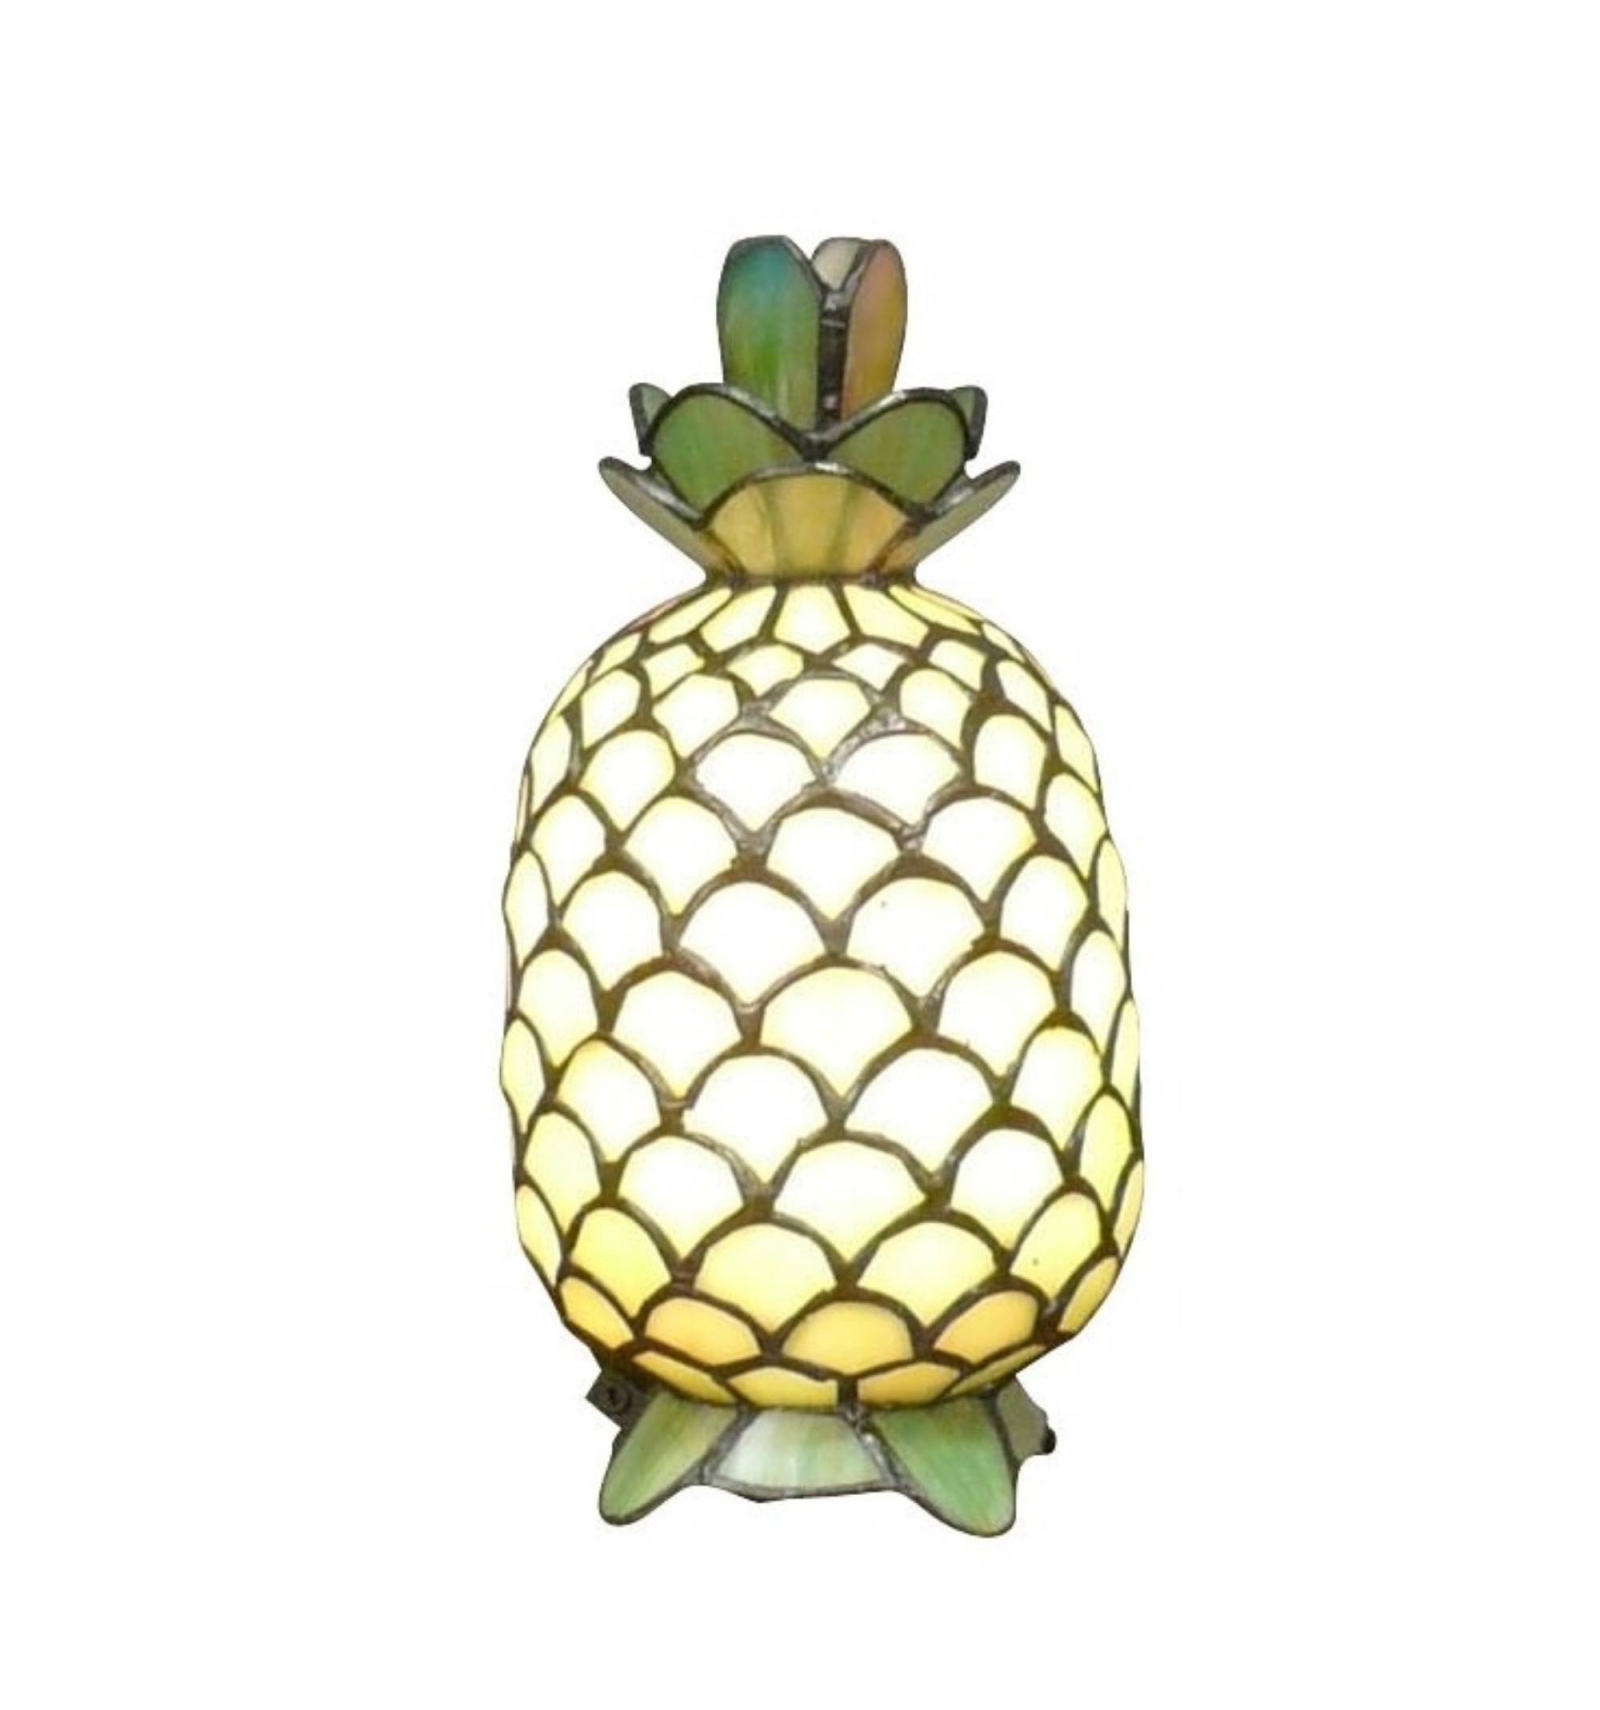 veltalende vores Minde om Tiffany bordlampe lampe ananas - Tiffany lamper